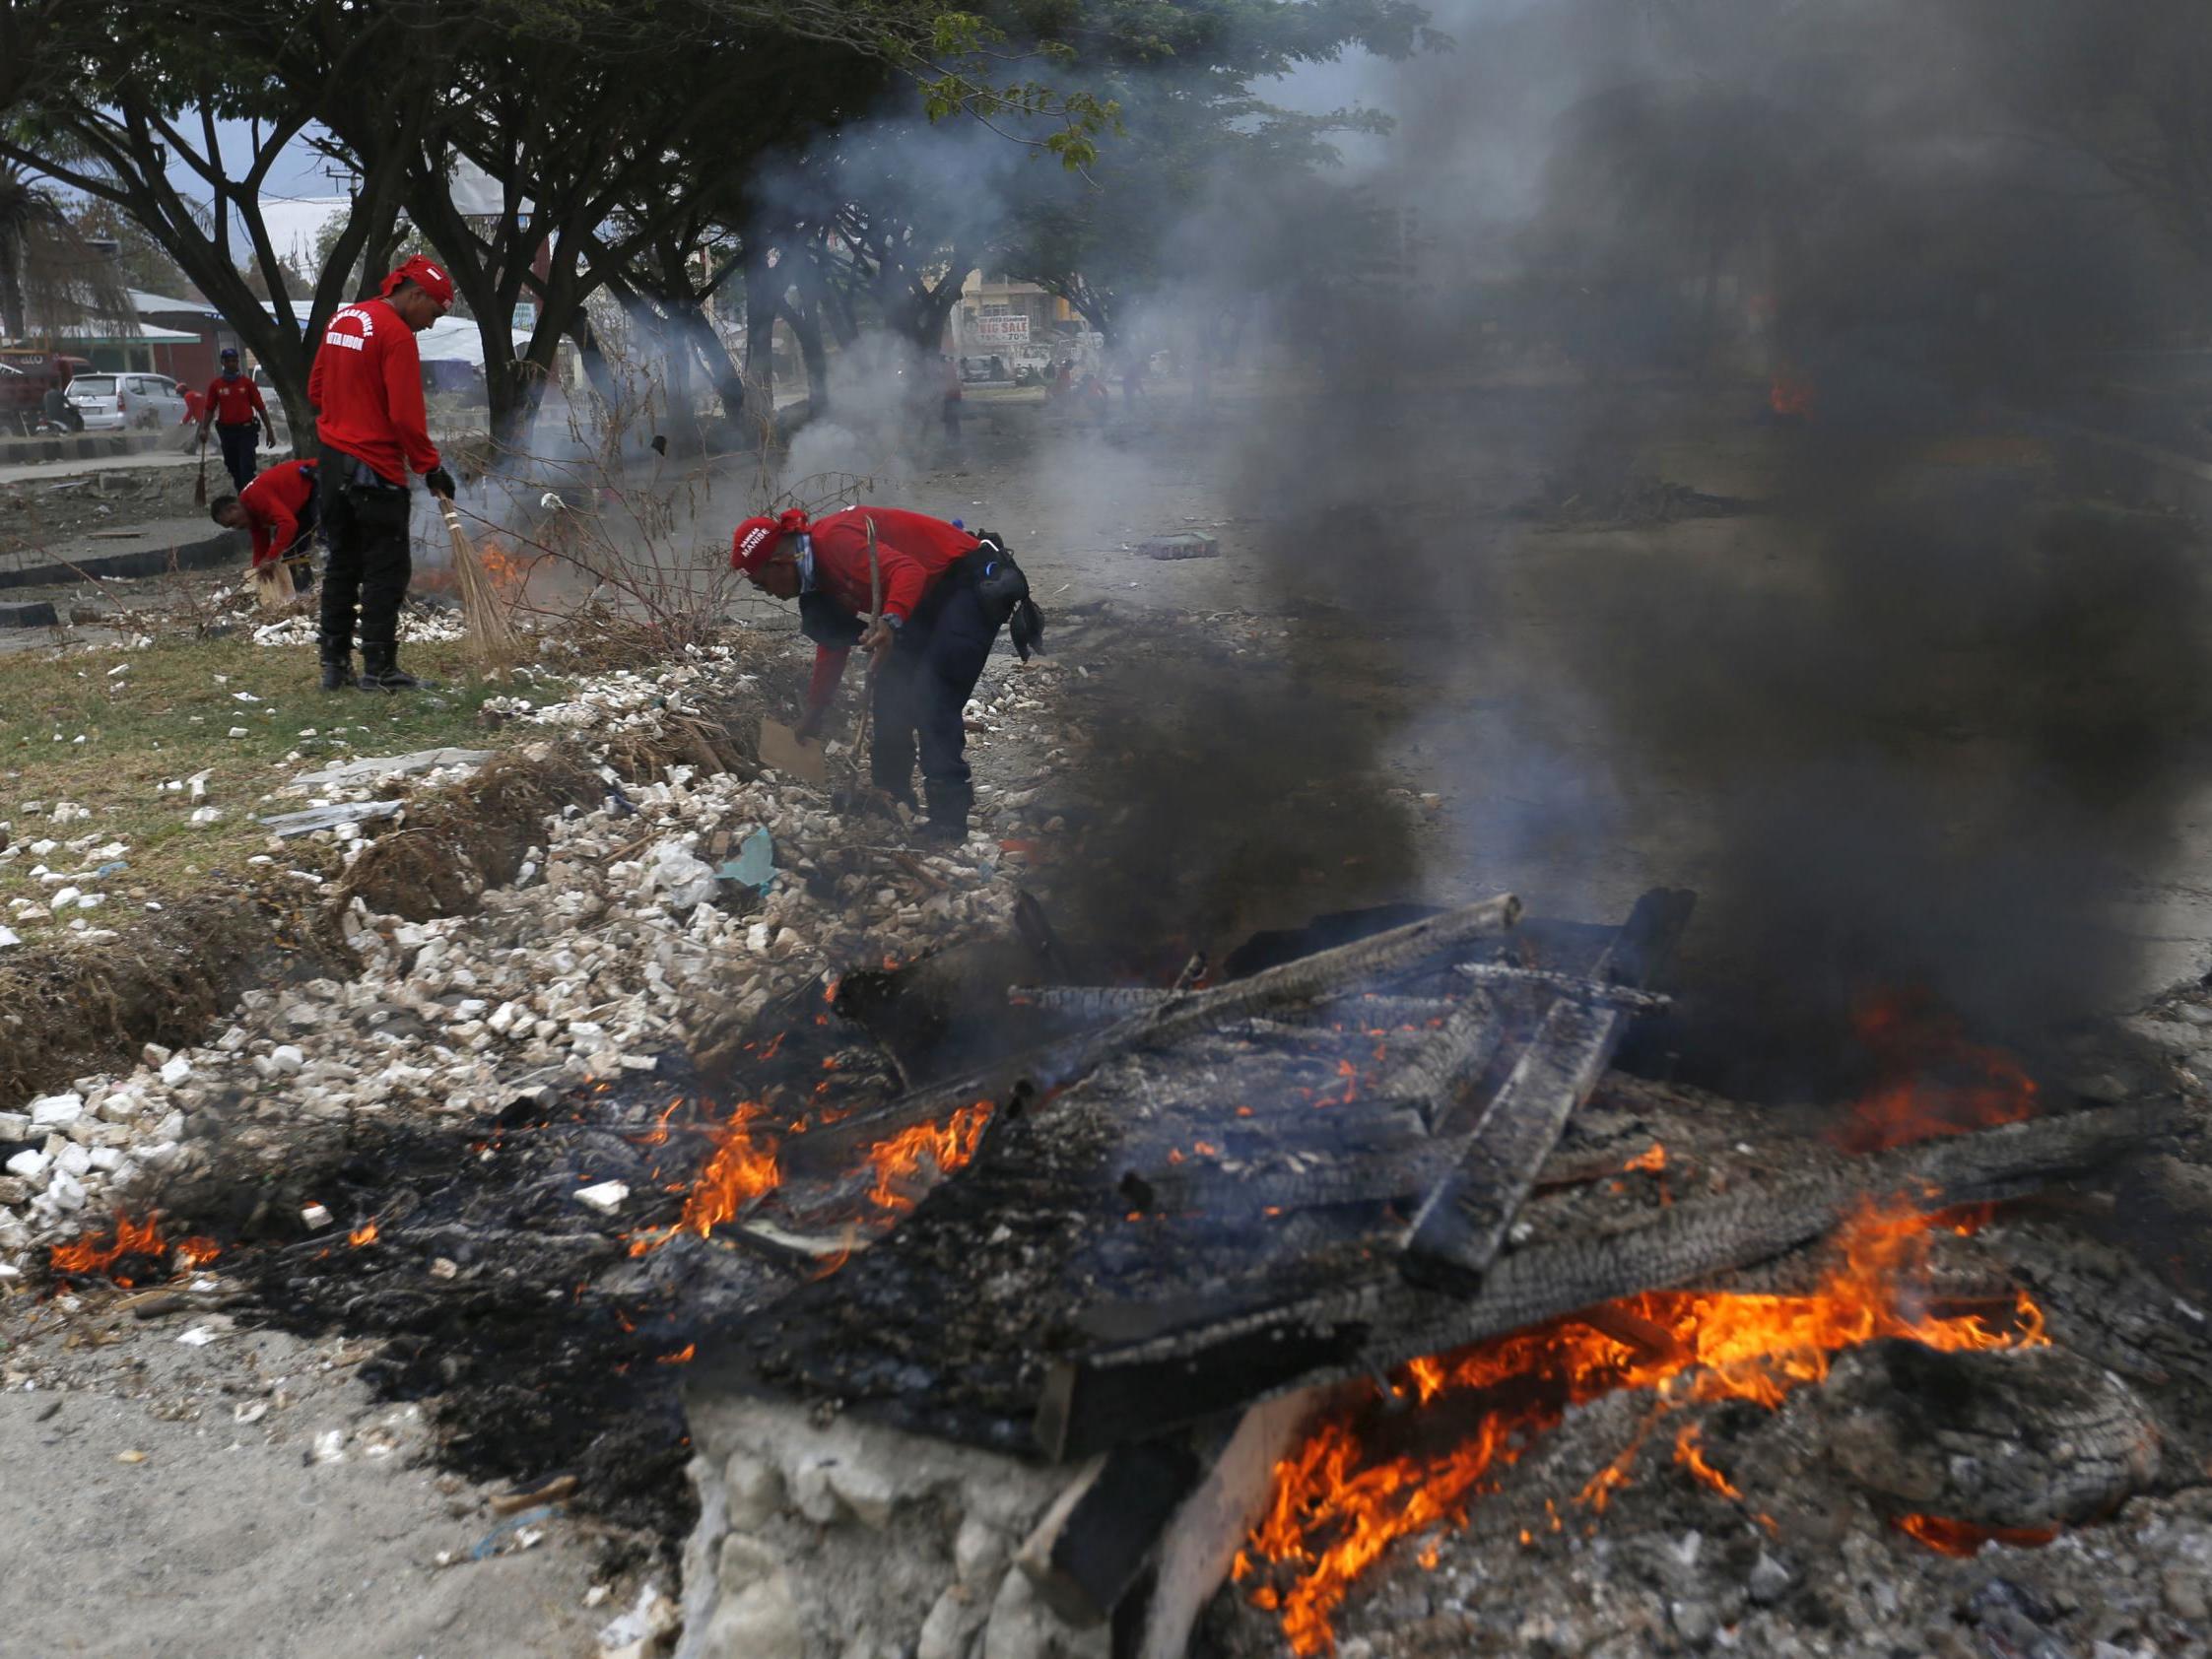 Rescuers burn debris